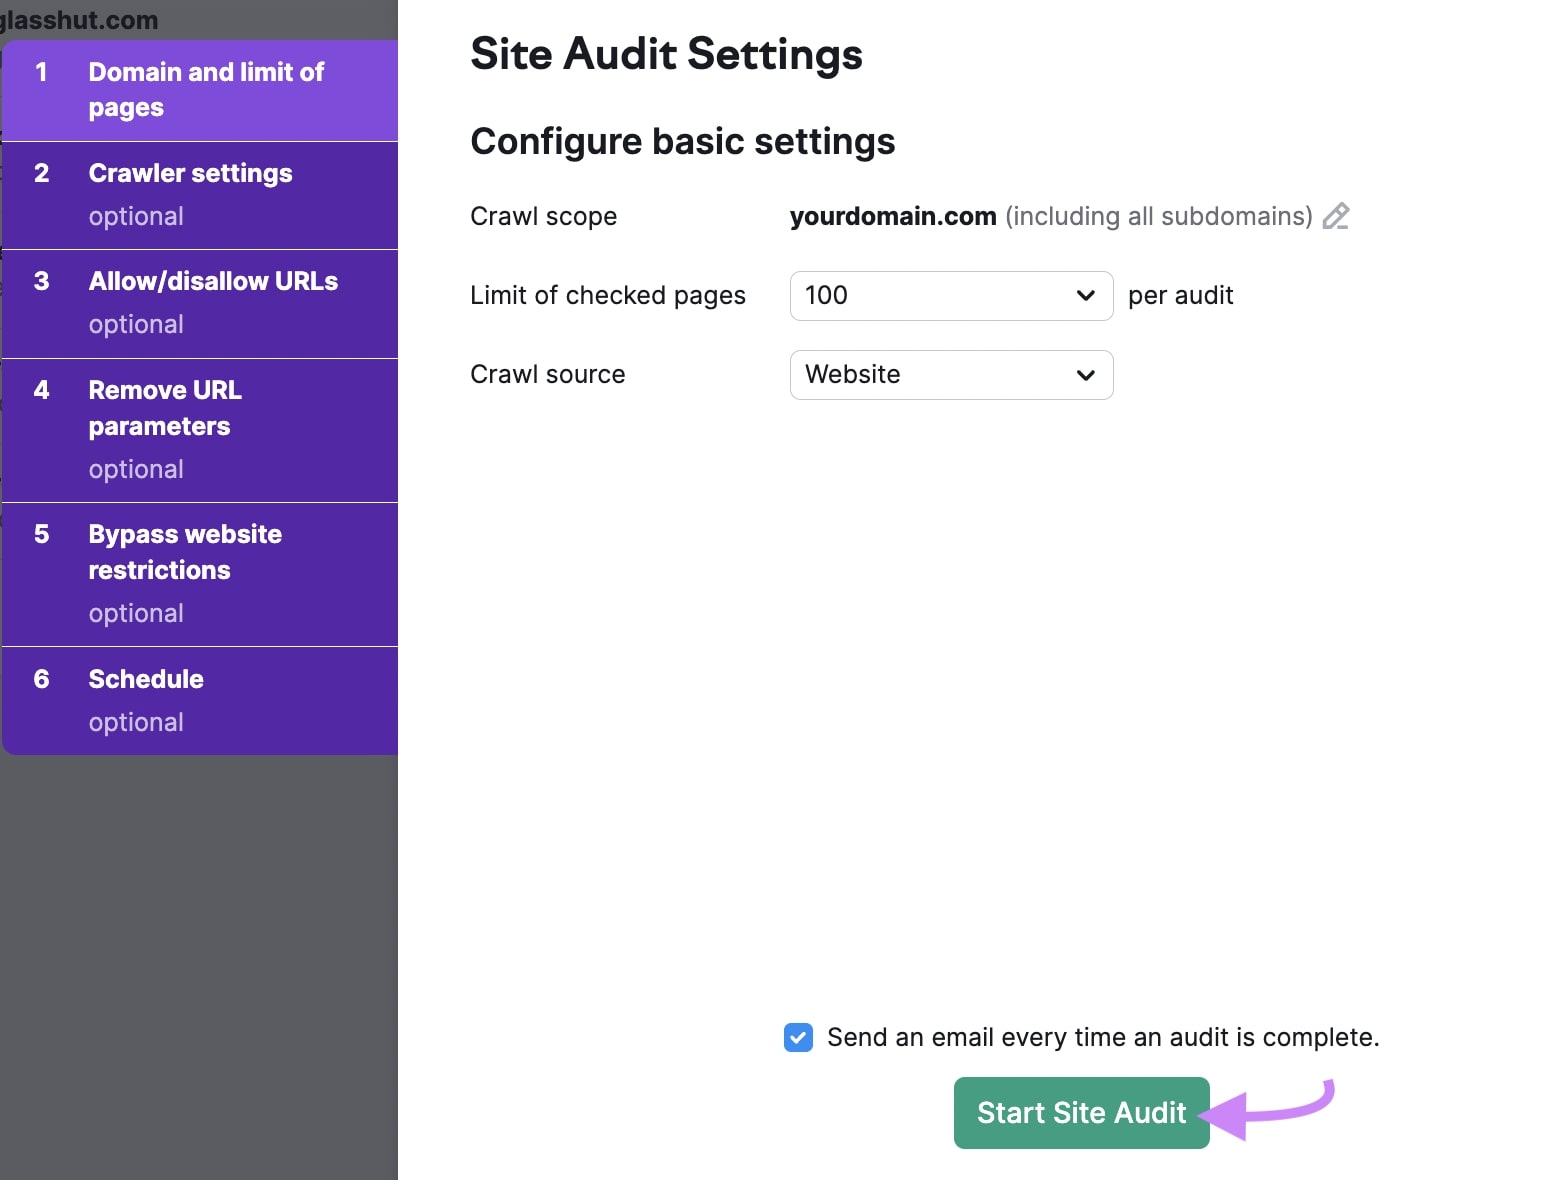 Site Audit Settings screen